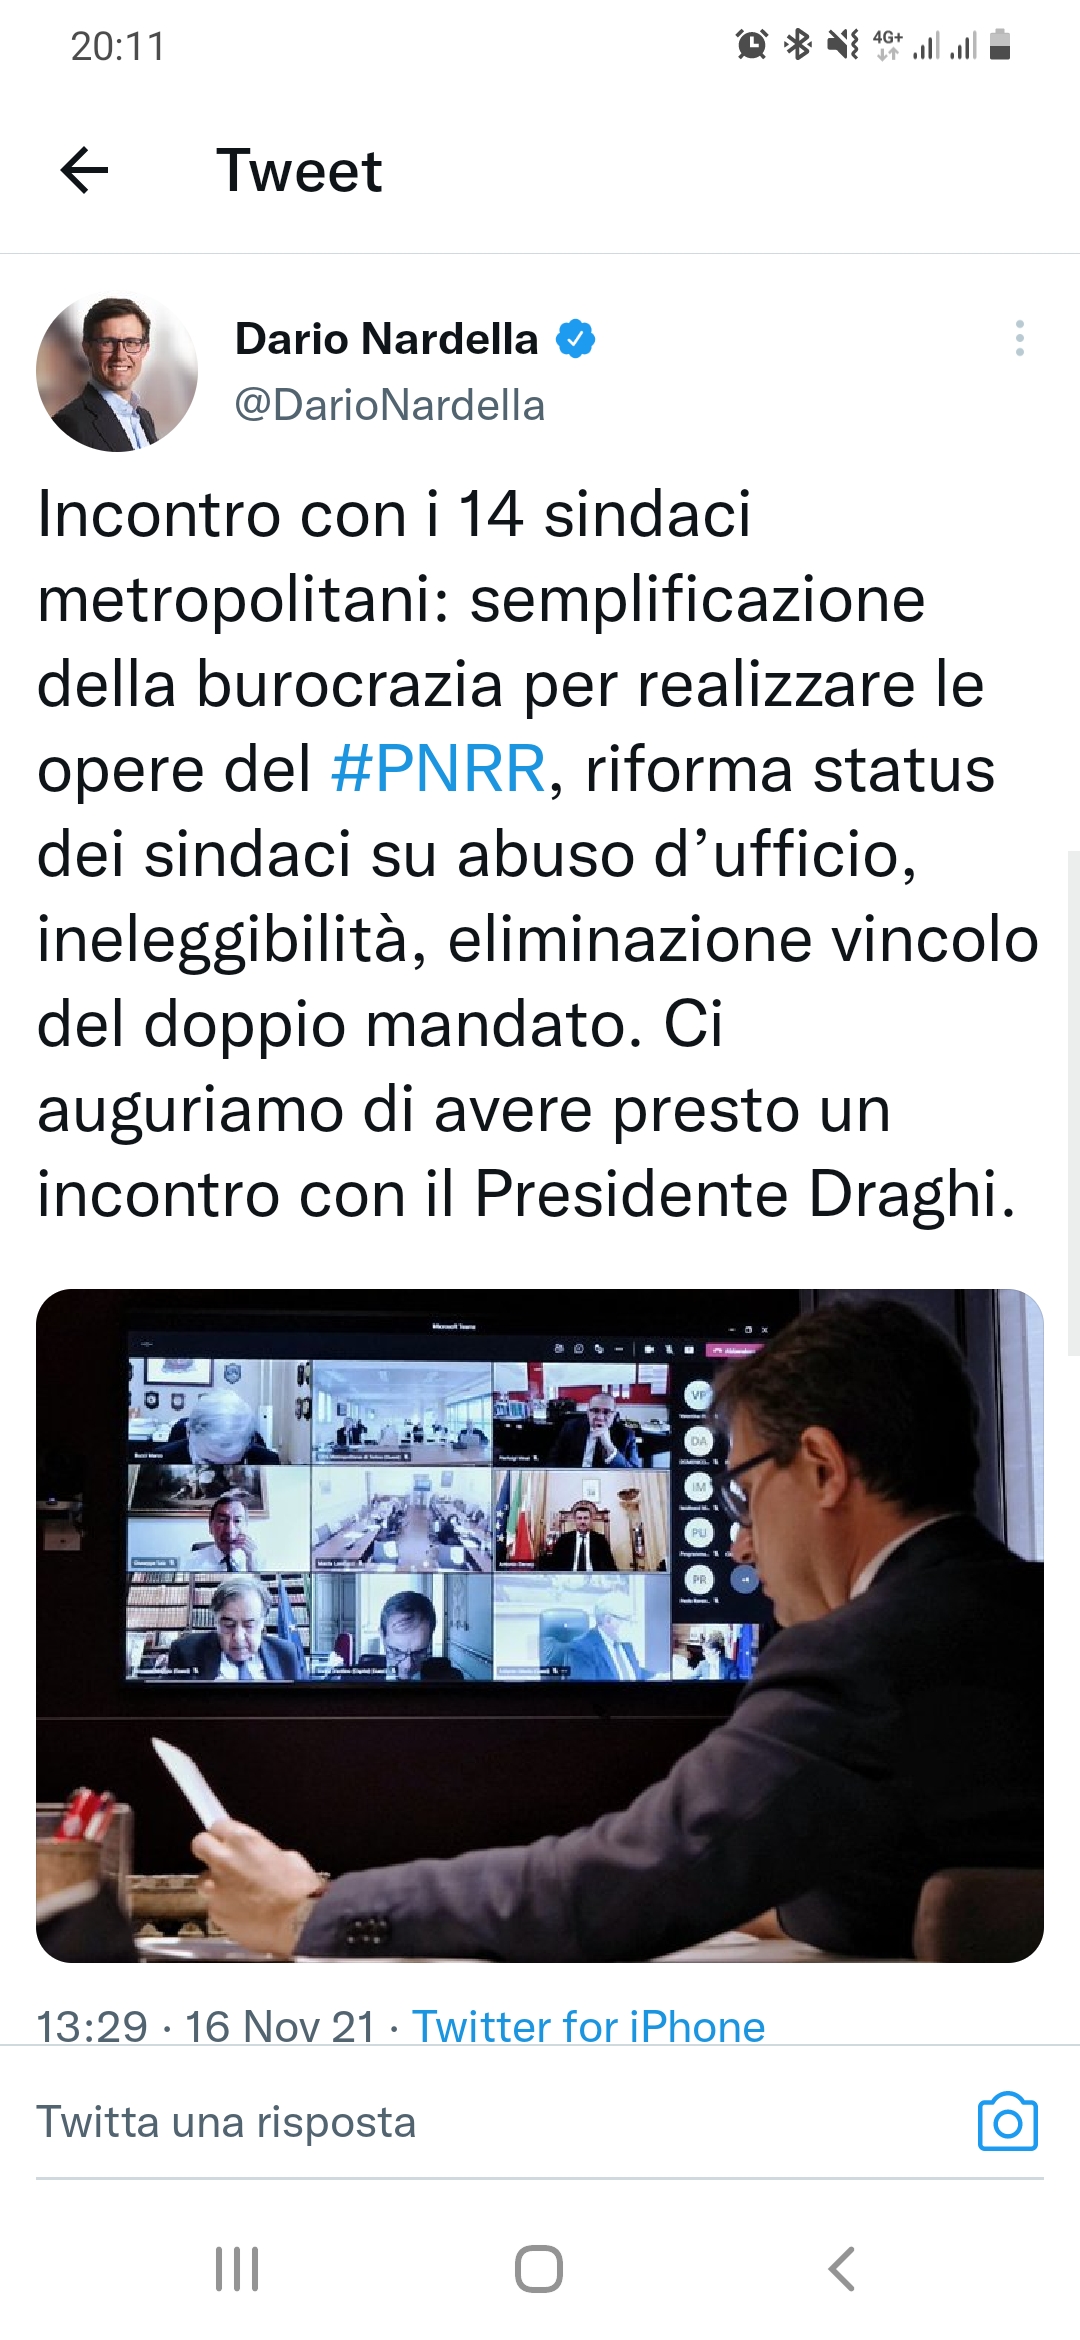 Il tweet di Dario Nardella